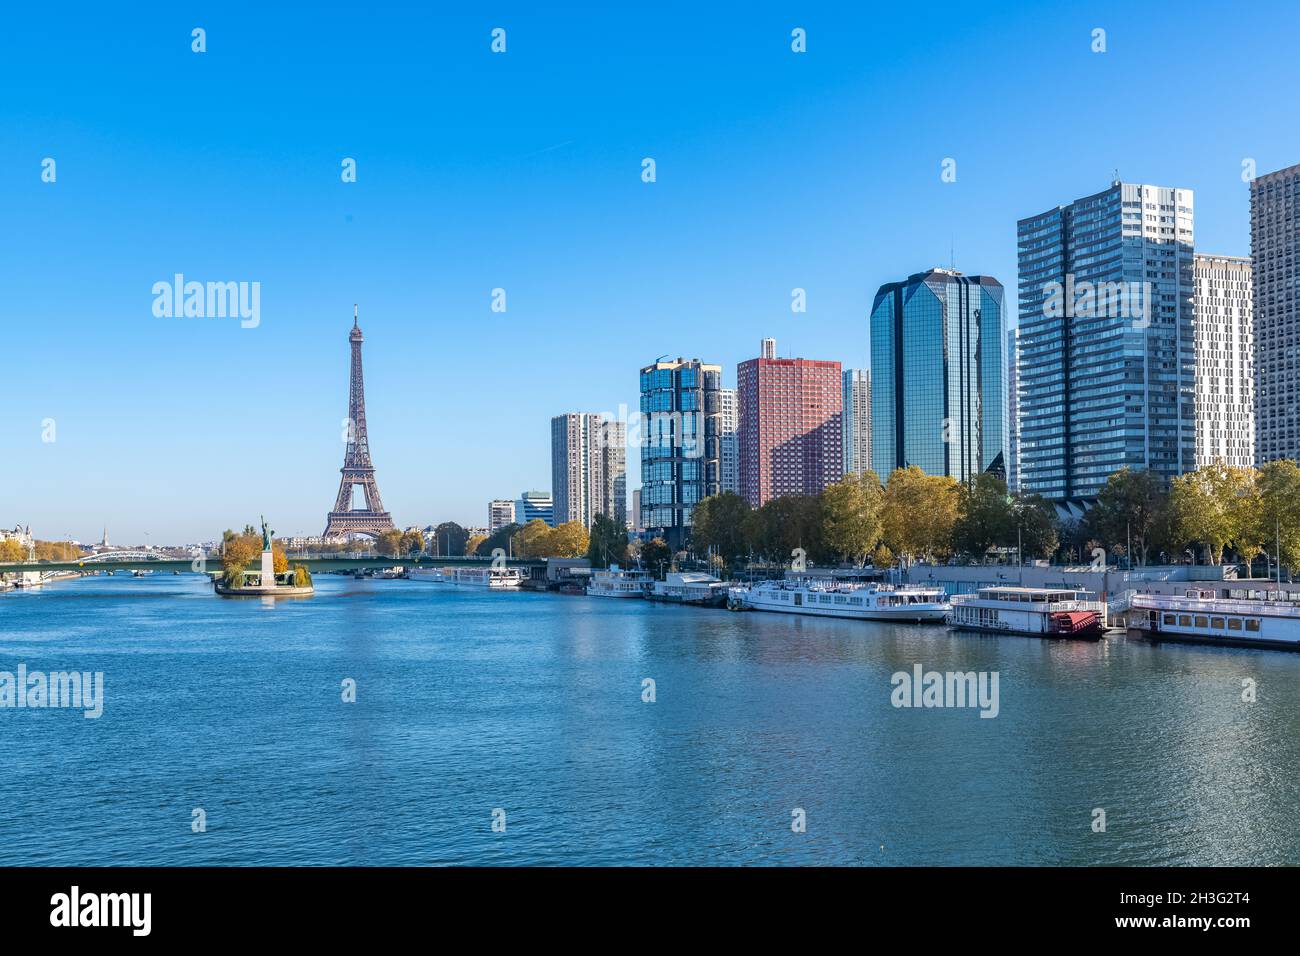 Paris, le pont Grenelle sur la Seine, avec la statue de la liberté, et la Tour Eiffel en arrière-plan Banque D'Images